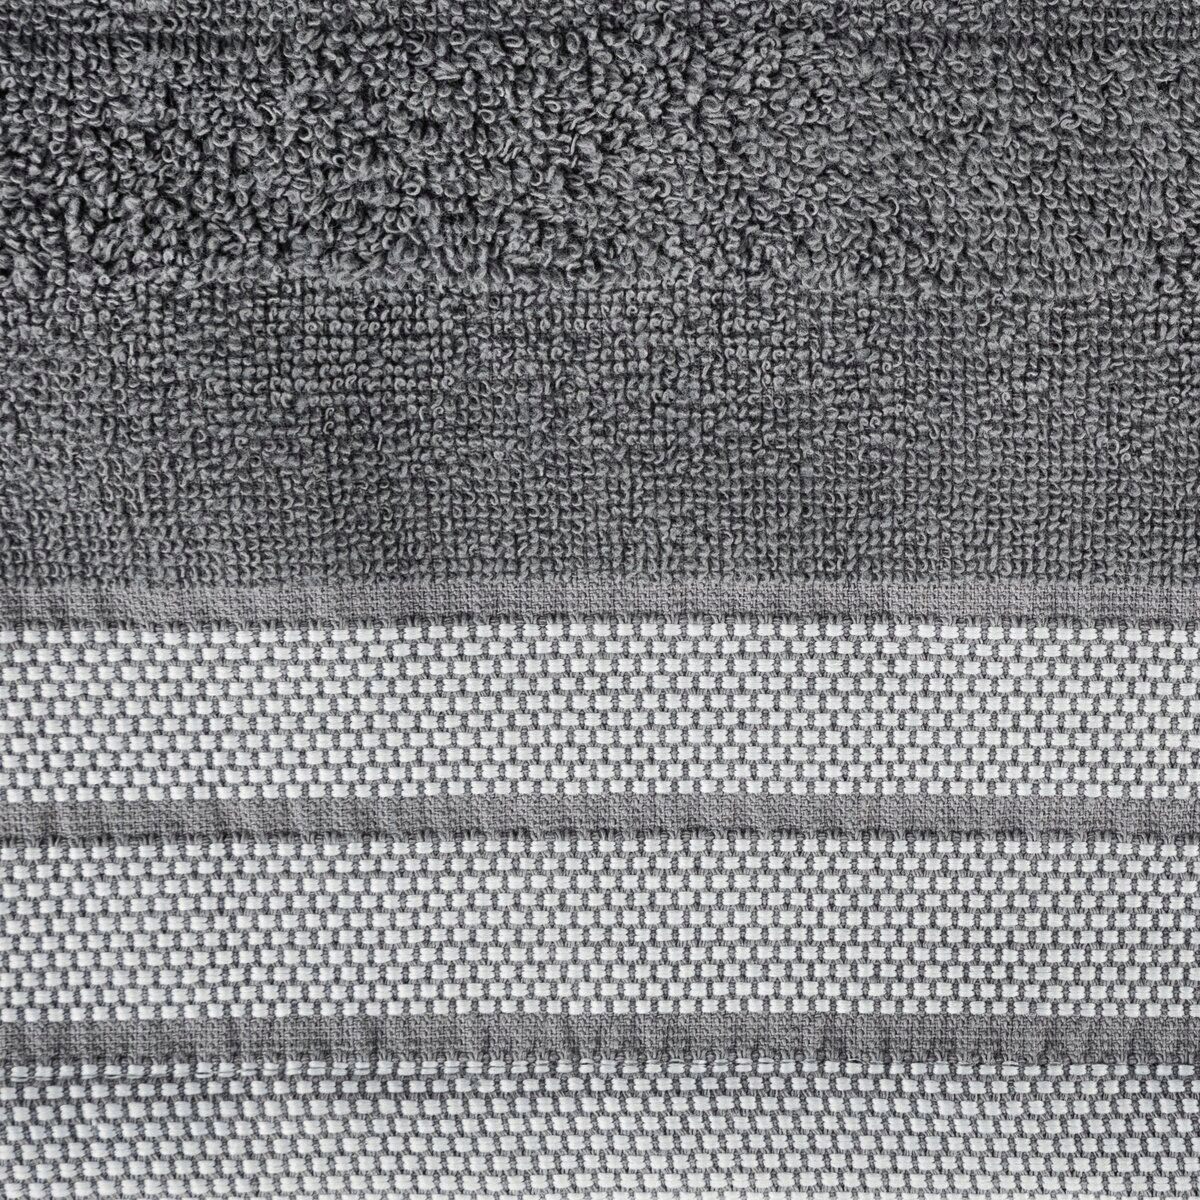 Ręcznik Pati 70x140 stalowy frotte pasy 500g/m2